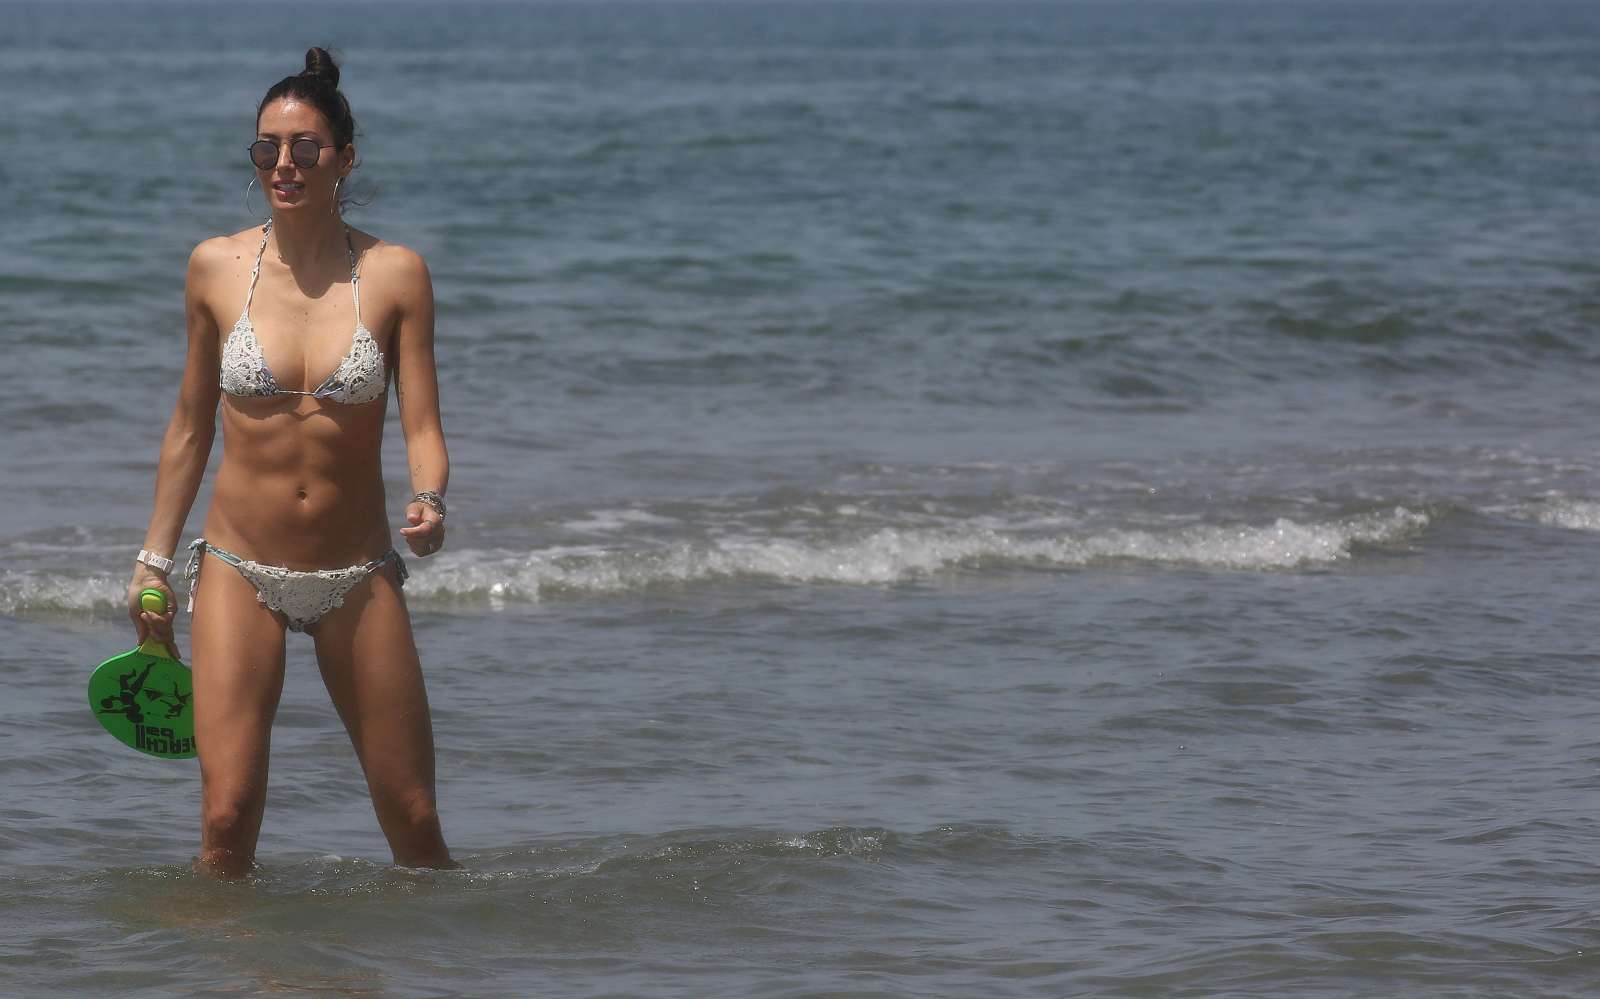 Elisabetta Gregoraci in Bikini at the Twiga Beach Club in Marina di Pietrasanta